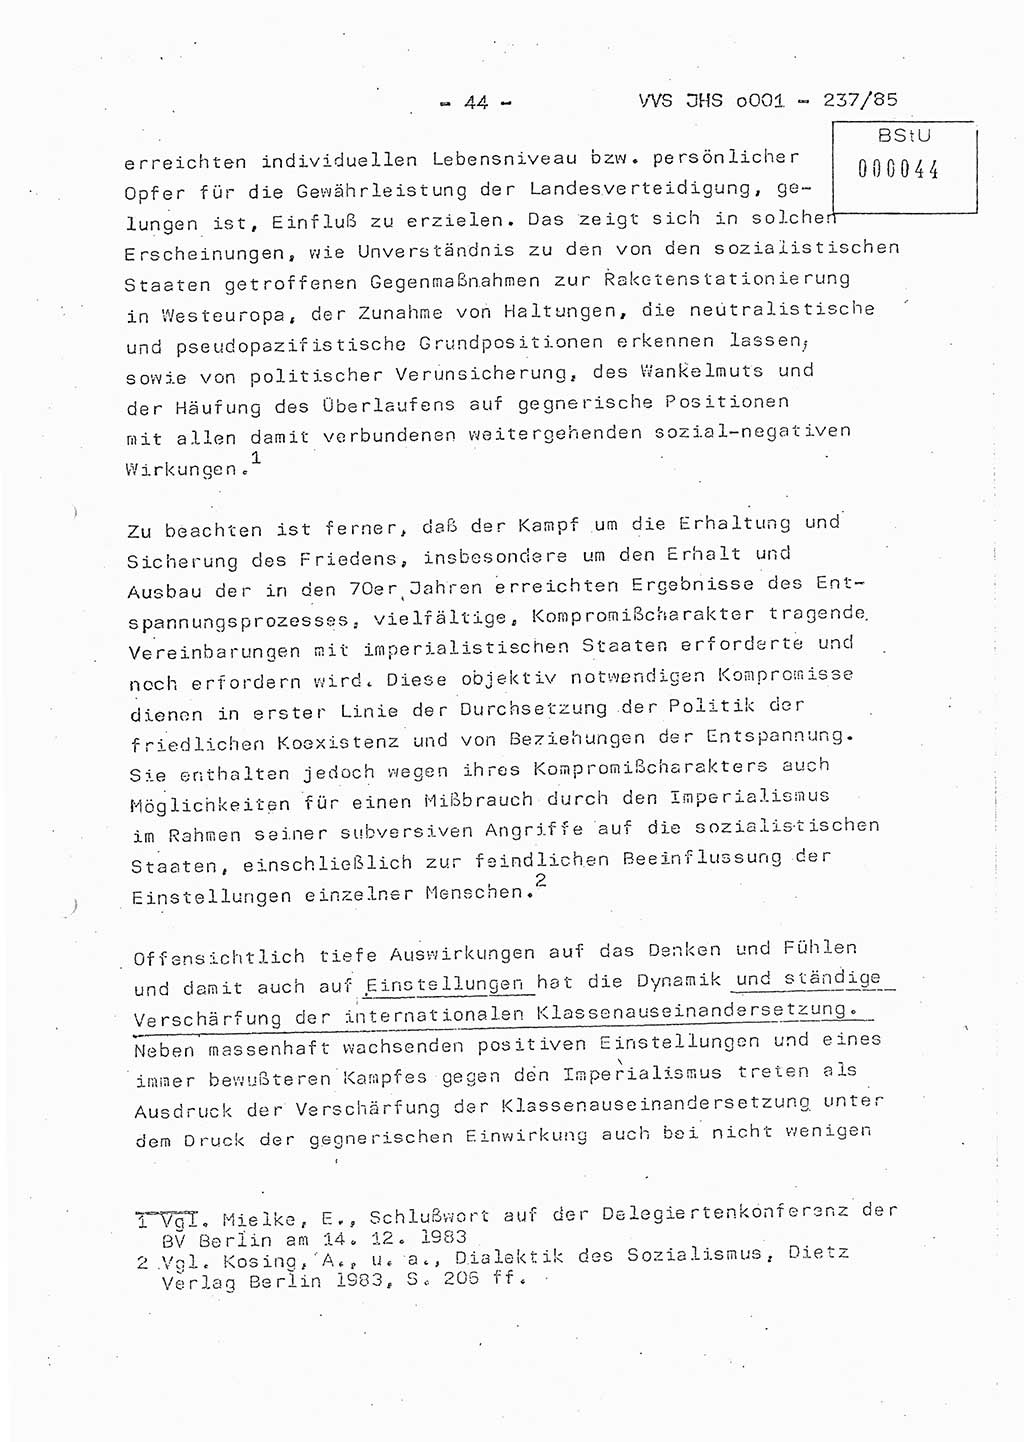 Dissertation Oberstleutnant Peter Jakulski (JHS), Oberstleutnat Christian Rudolph (HA Ⅸ), Major Horst Böttger (ZMD), Major Wolfgang Grüneberg (JHS), Major Albert Meutsch (JHS), Ministerium für Staatssicherheit (MfS) [Deutsche Demokratische Republik (DDR)], Juristische Hochschule (JHS), Vertrauliche Verschlußsache (VVS) o001-237/85, Potsdam 1985, Seite 44 (Diss. MfS DDR JHS VVS o001-237/85 1985, S. 44)